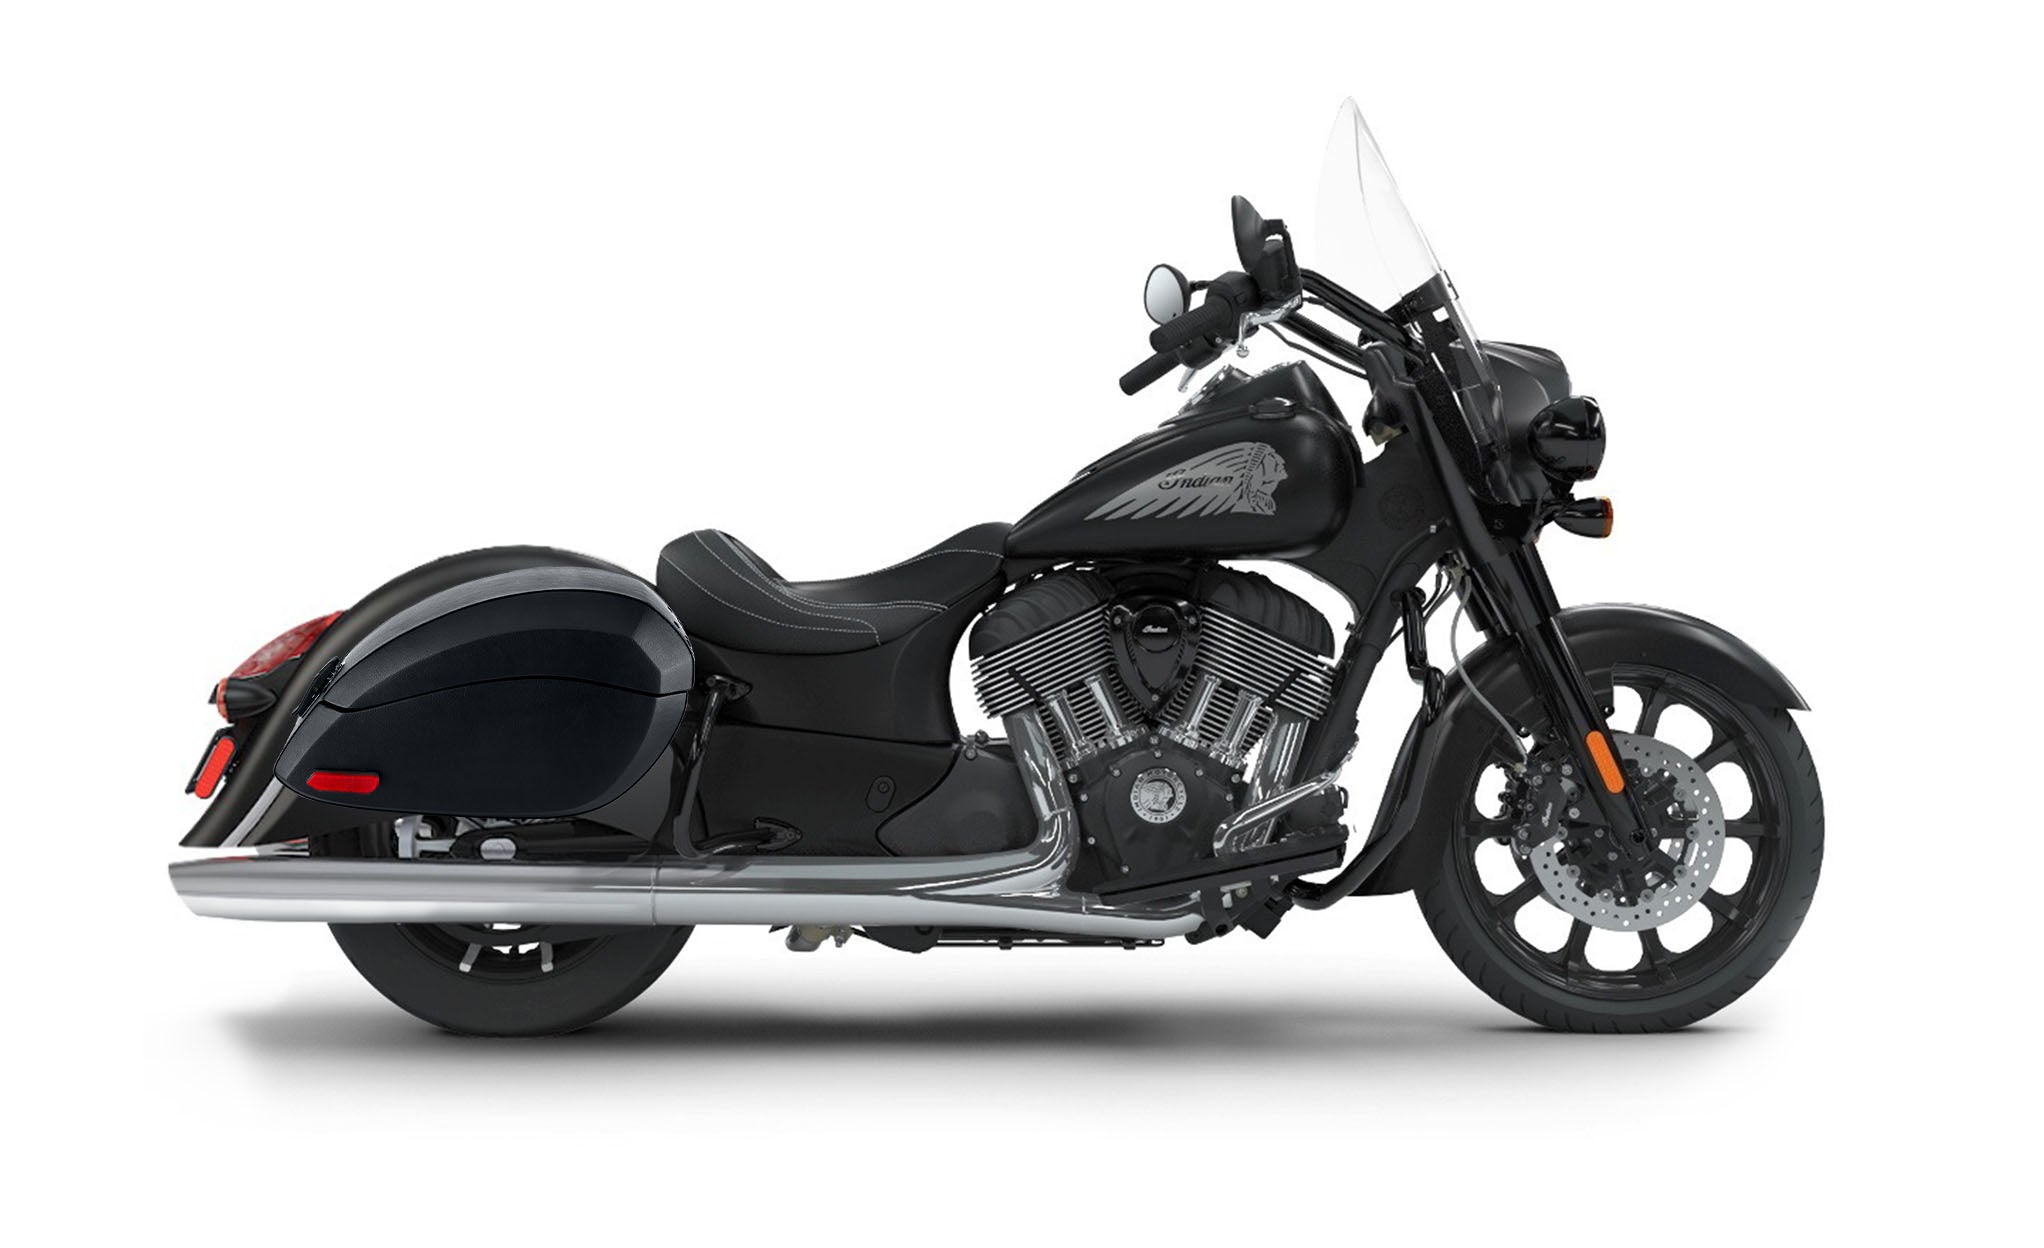 Viking Phantom Large Indian Springfield Darkhorse Leather Wrapped Motorcycle Hard Saddlebags on Bike Photo @expand